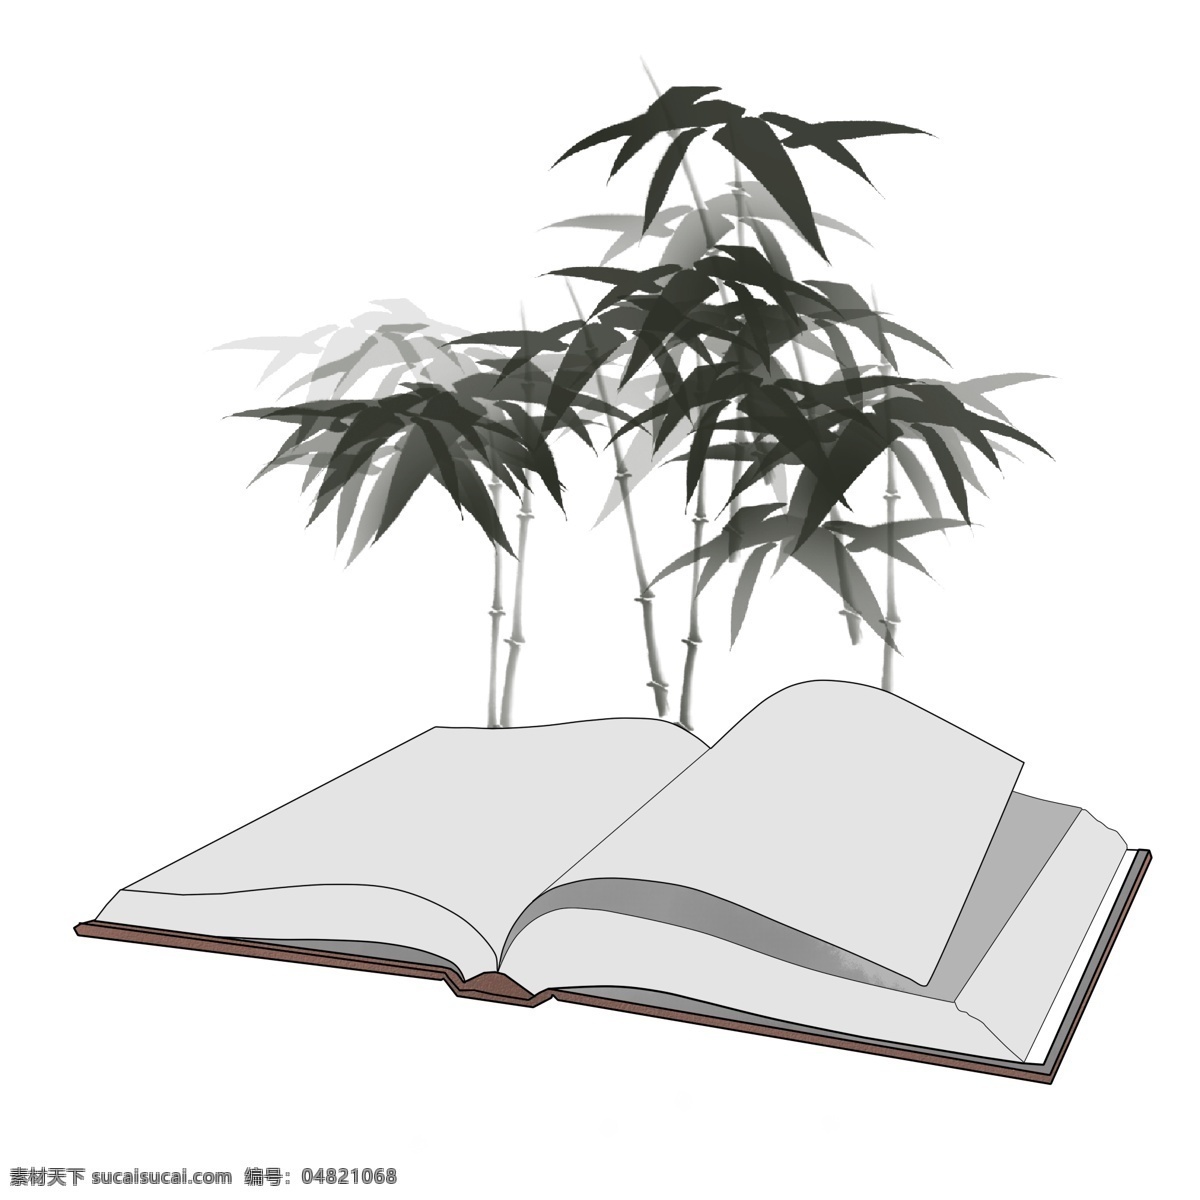 长 竹子 书籍 插图 书本 树 竹子插图 学习 翻开的书本 翻开的书籍 书